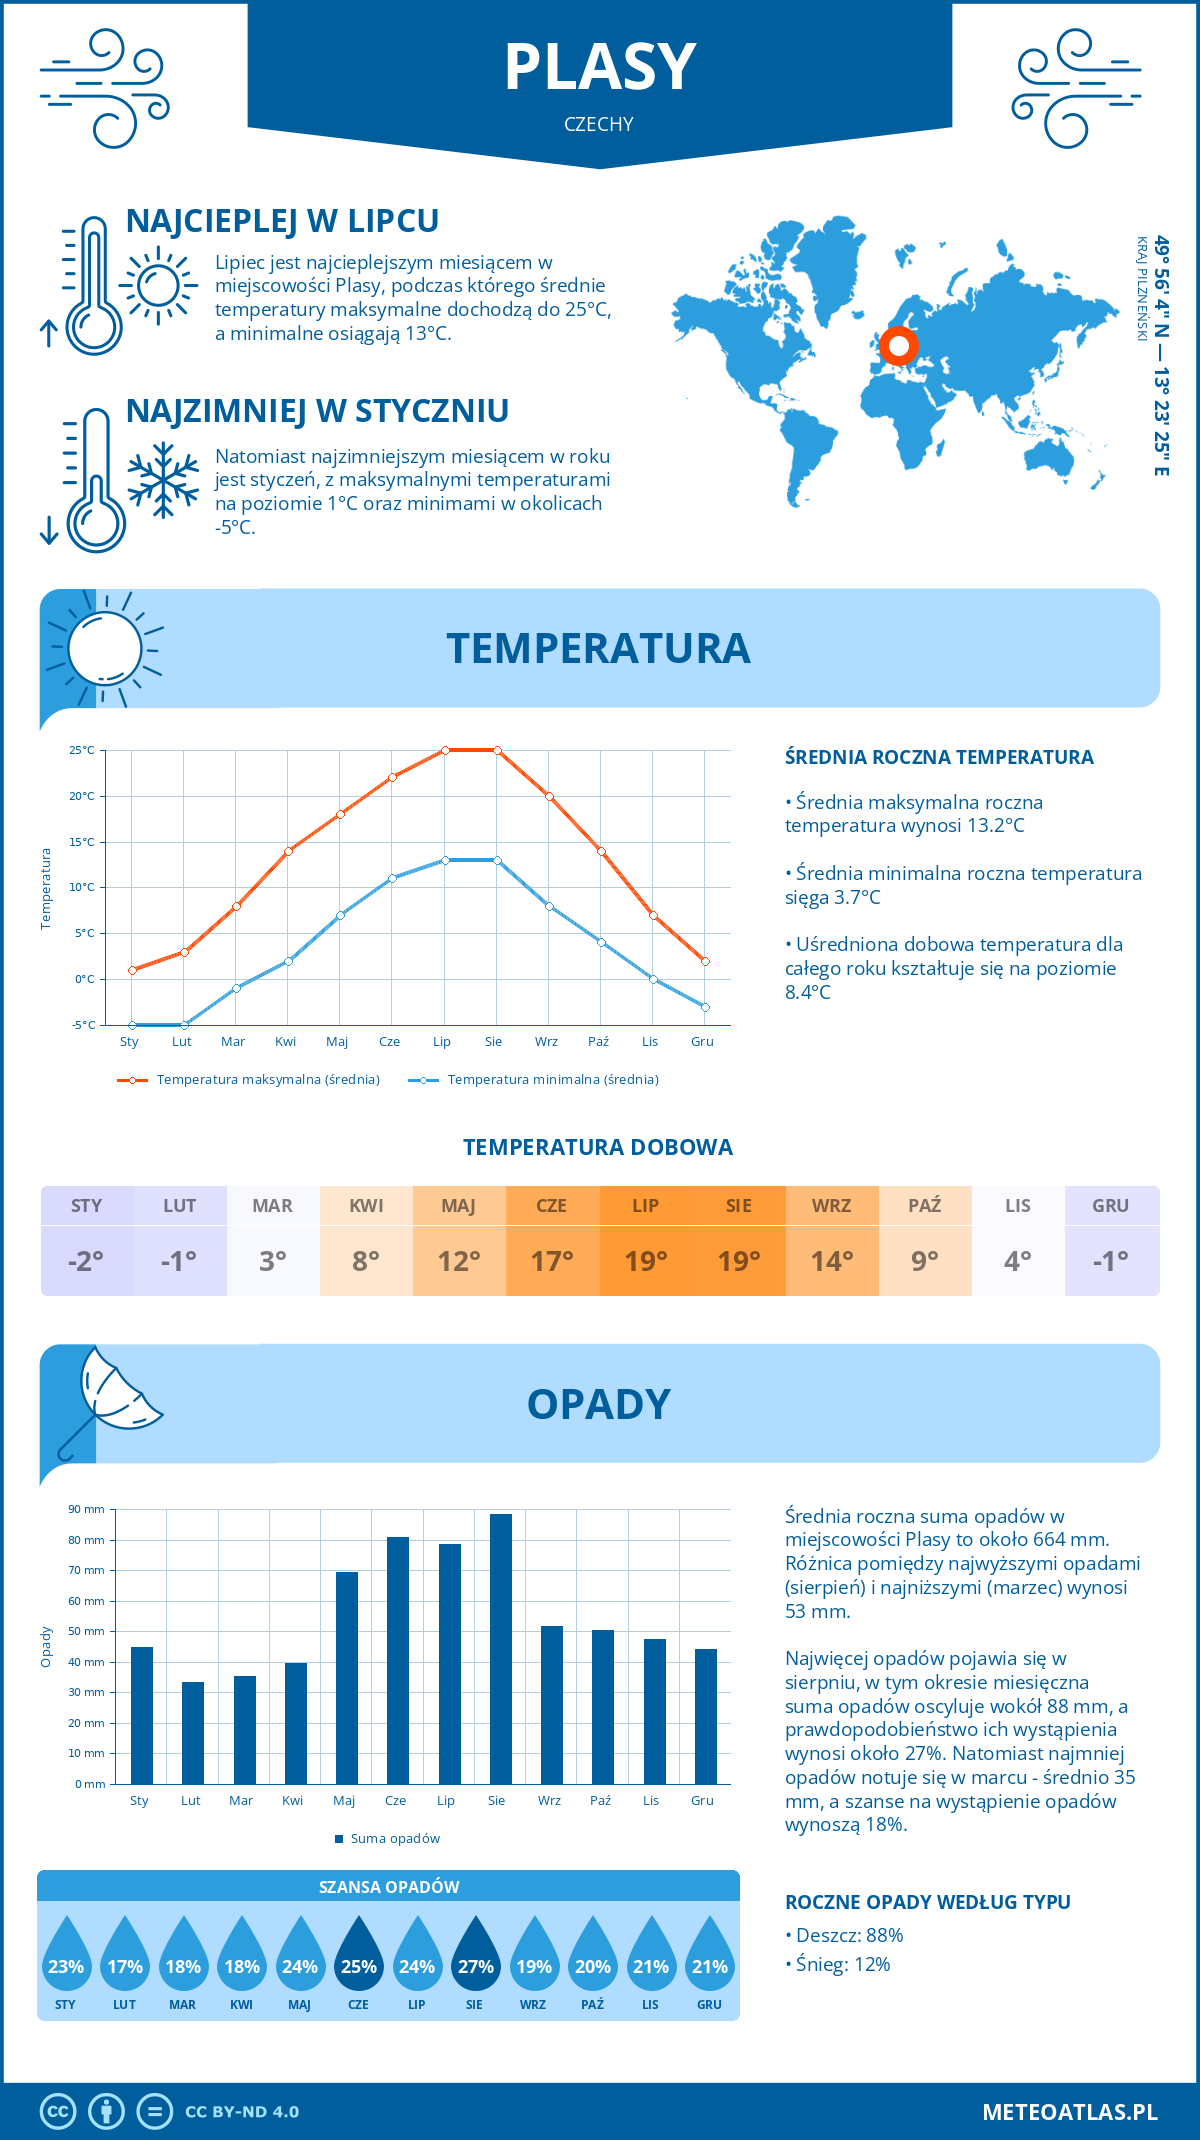 Pogoda Plasy (Czechy). Temperatura oraz opady.